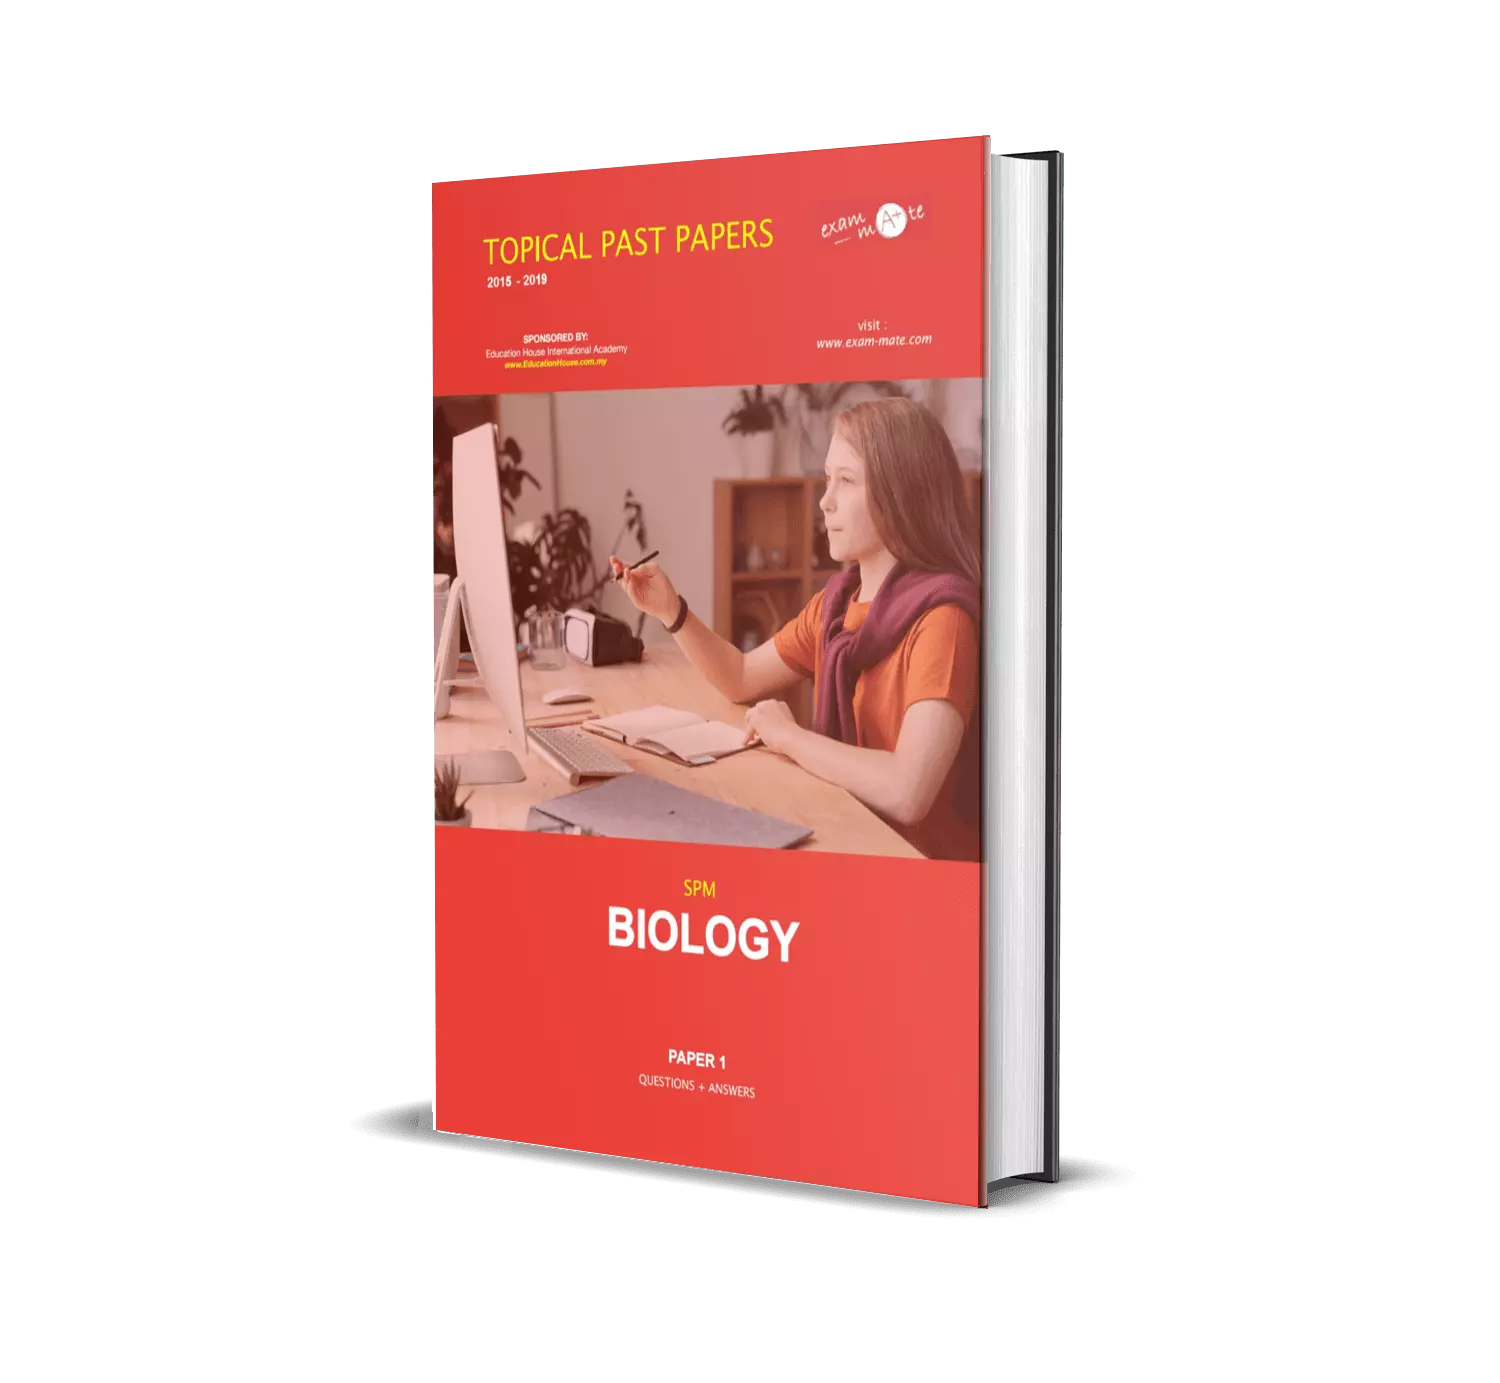 BIOLOGY P1